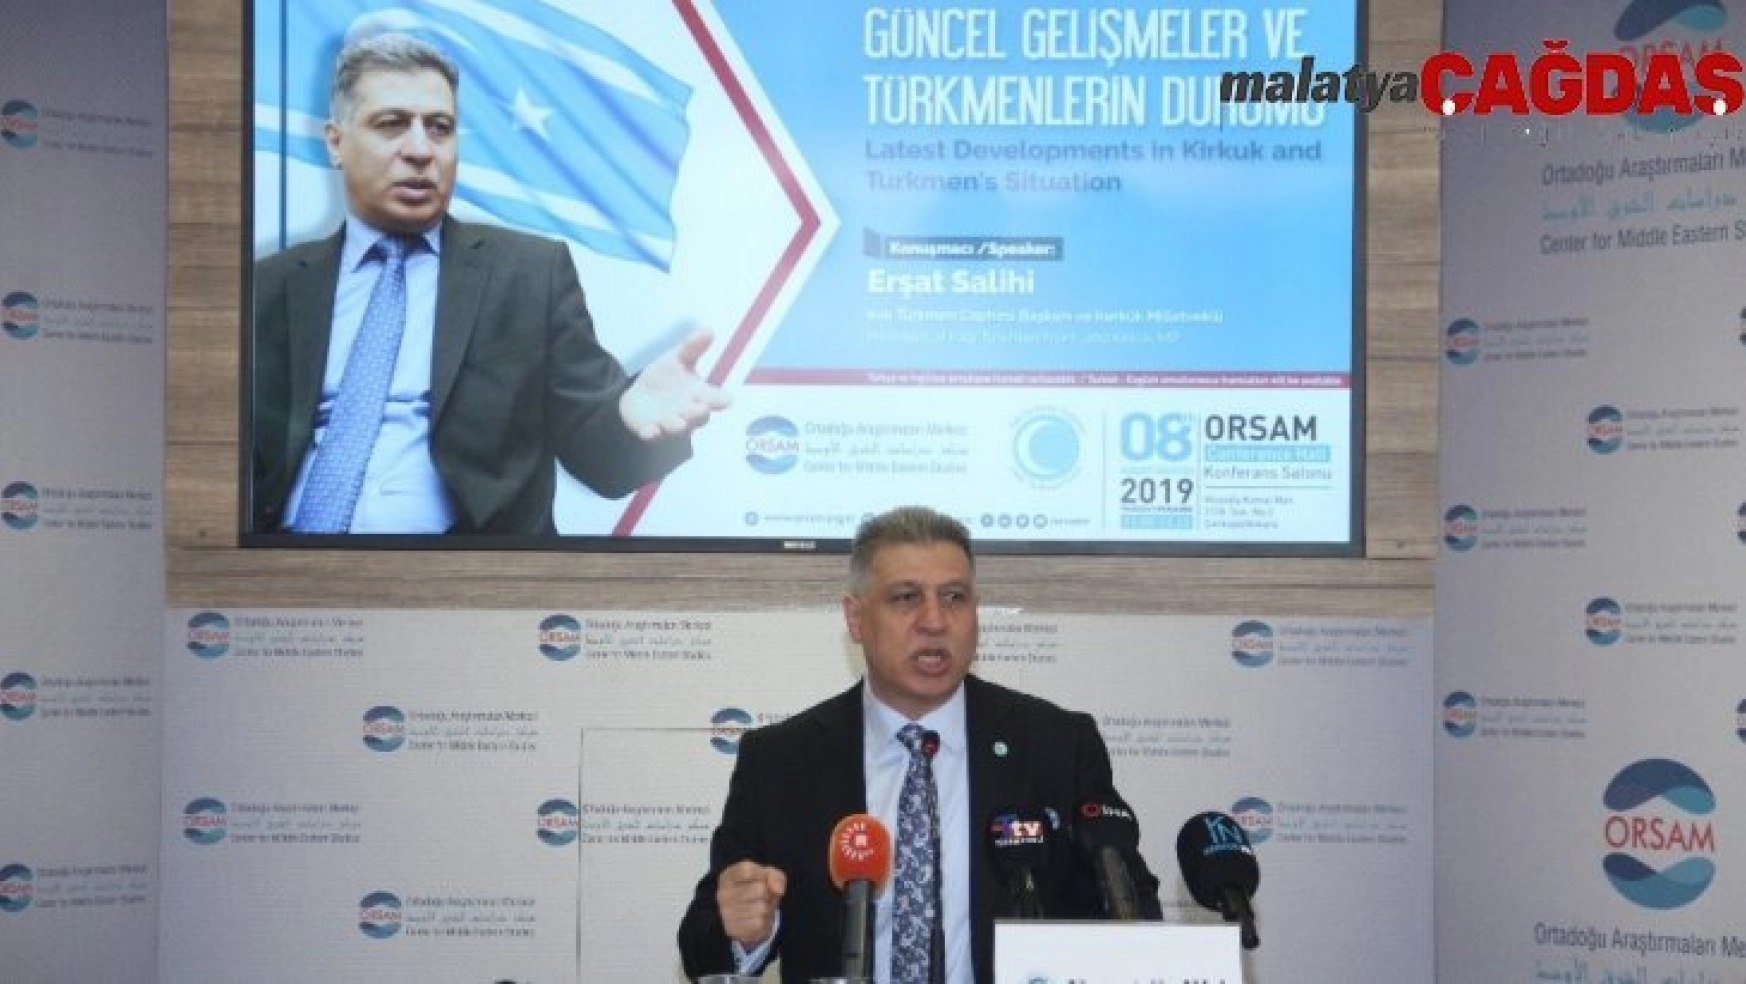 Erşat Salihi: 'Türkmenler, asli yaşam alanlarında ülkelerine daha yüksek katkı sağlayacaktır'